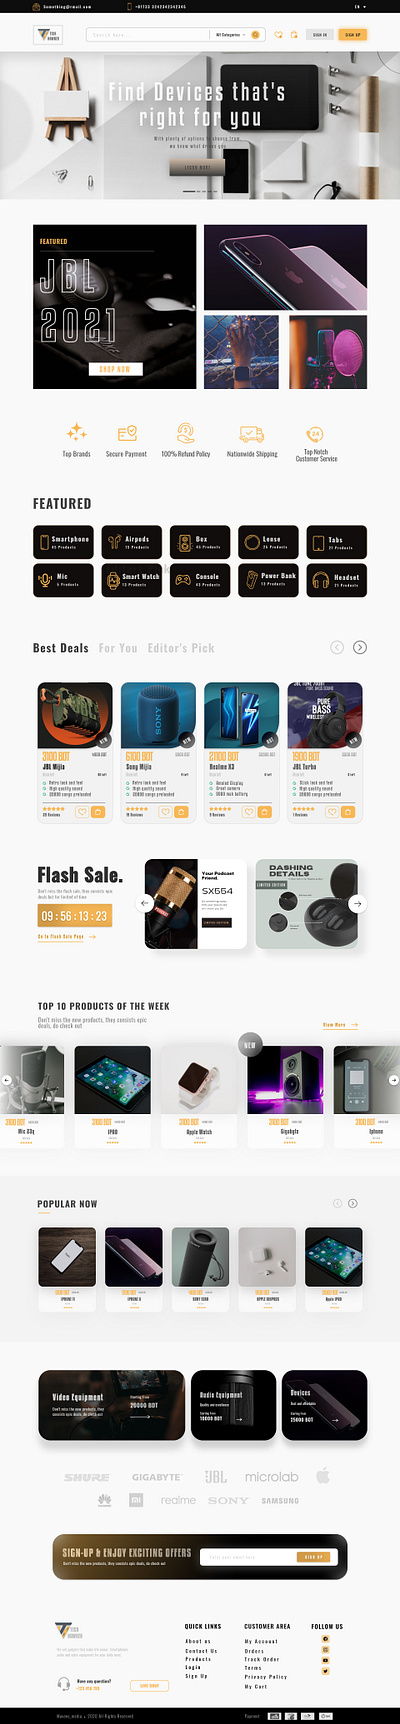 Gadget Ecommerce - 📱 branding ecommerce flash sale gadget landing page smaert devices smartphone speakers tech uiux web design